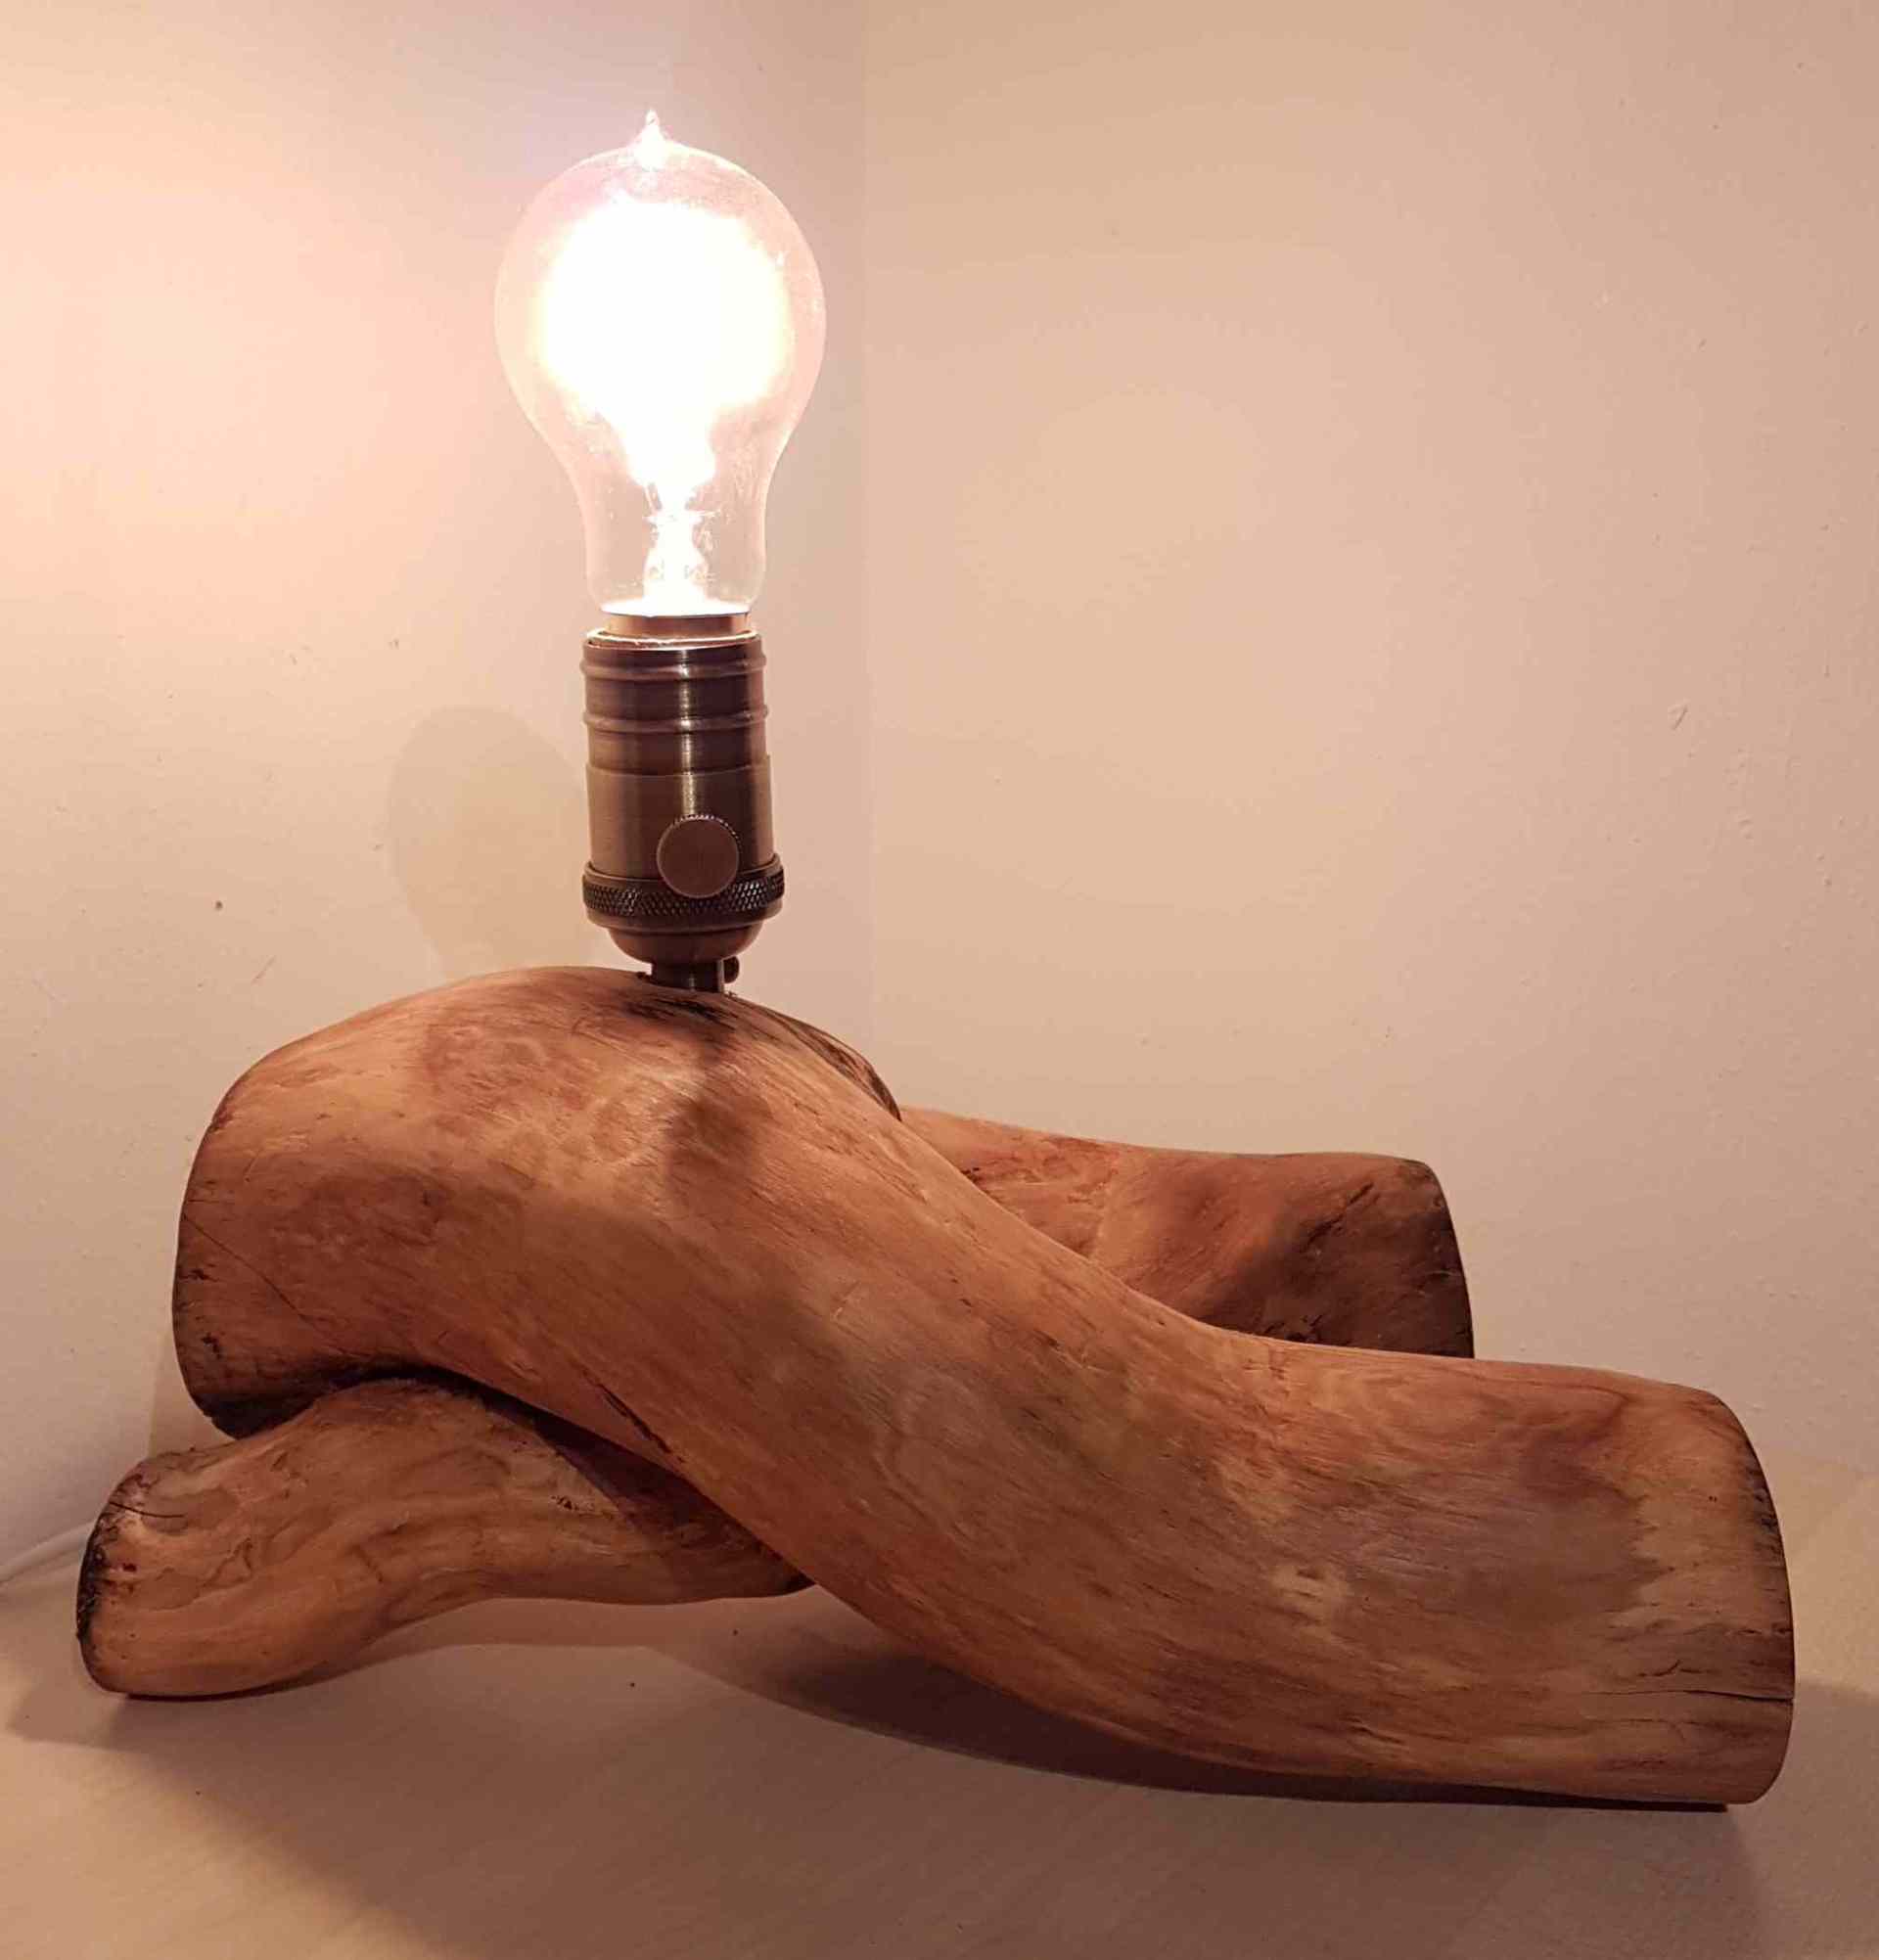 Tischlampe aus Holz, alter verwachsener Efeu, Handarbeit